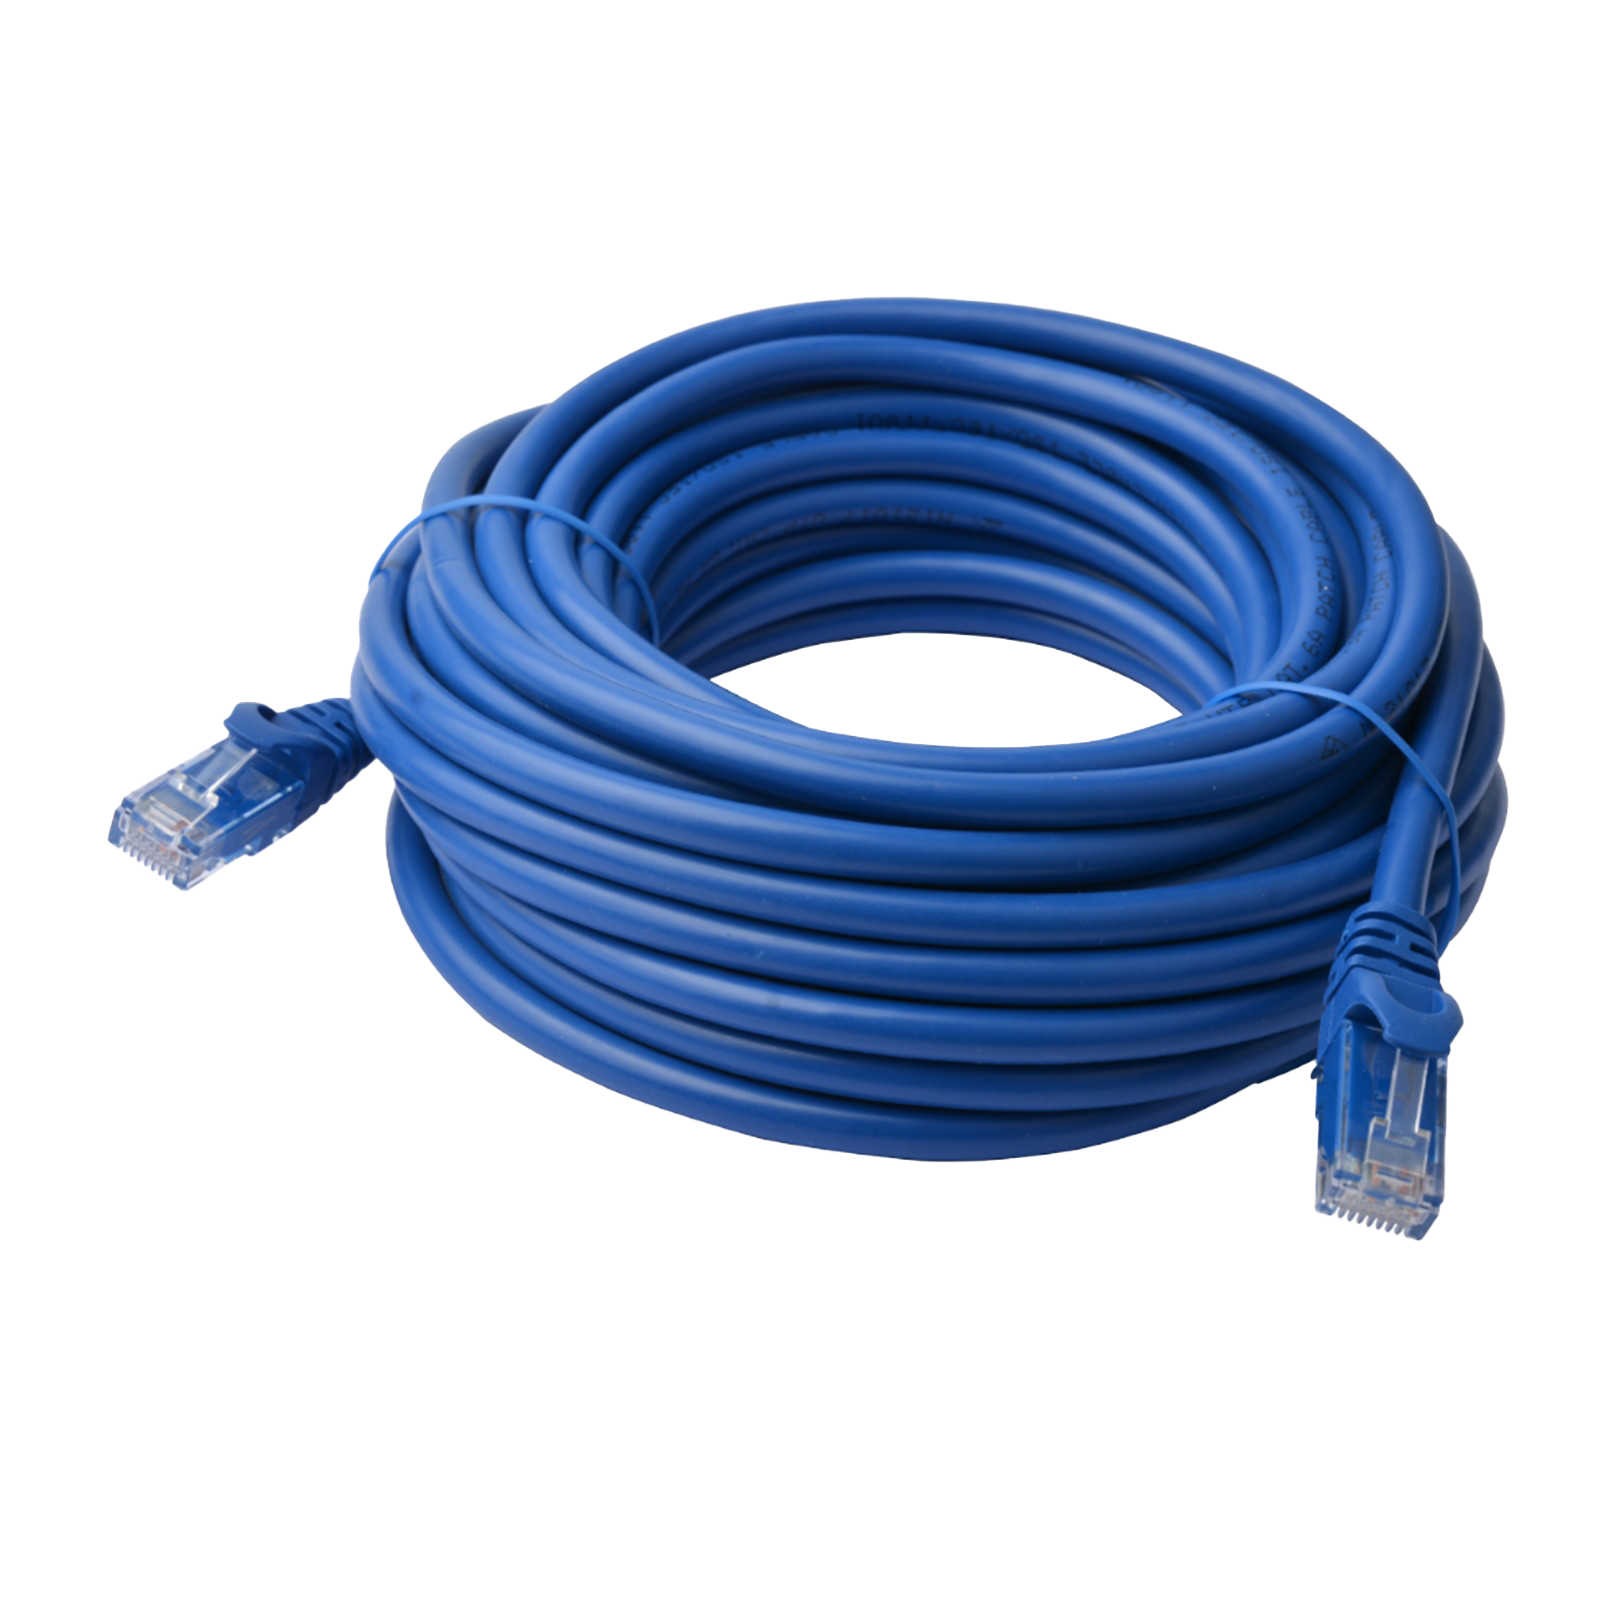 Blaues Ethernet-Kabel PNG Hochwertiges Bild